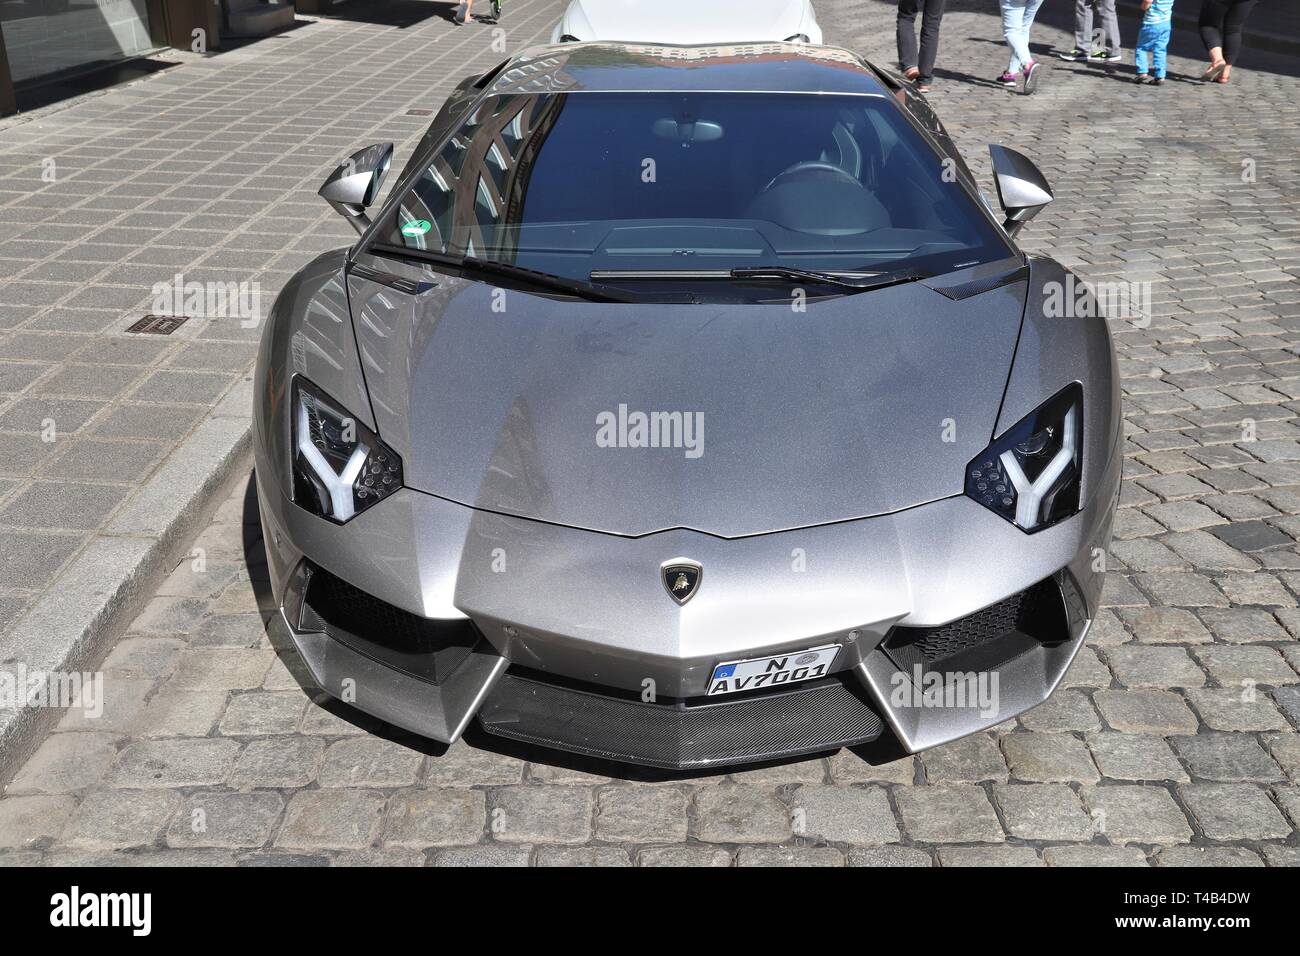 Norimberga, Germania - 6 Maggio 2018: Lamborghini Aventador sportive di lusso auto parcheggiate in Germania. La vettura è stata progettata da Filippo Perini. Foto Stock